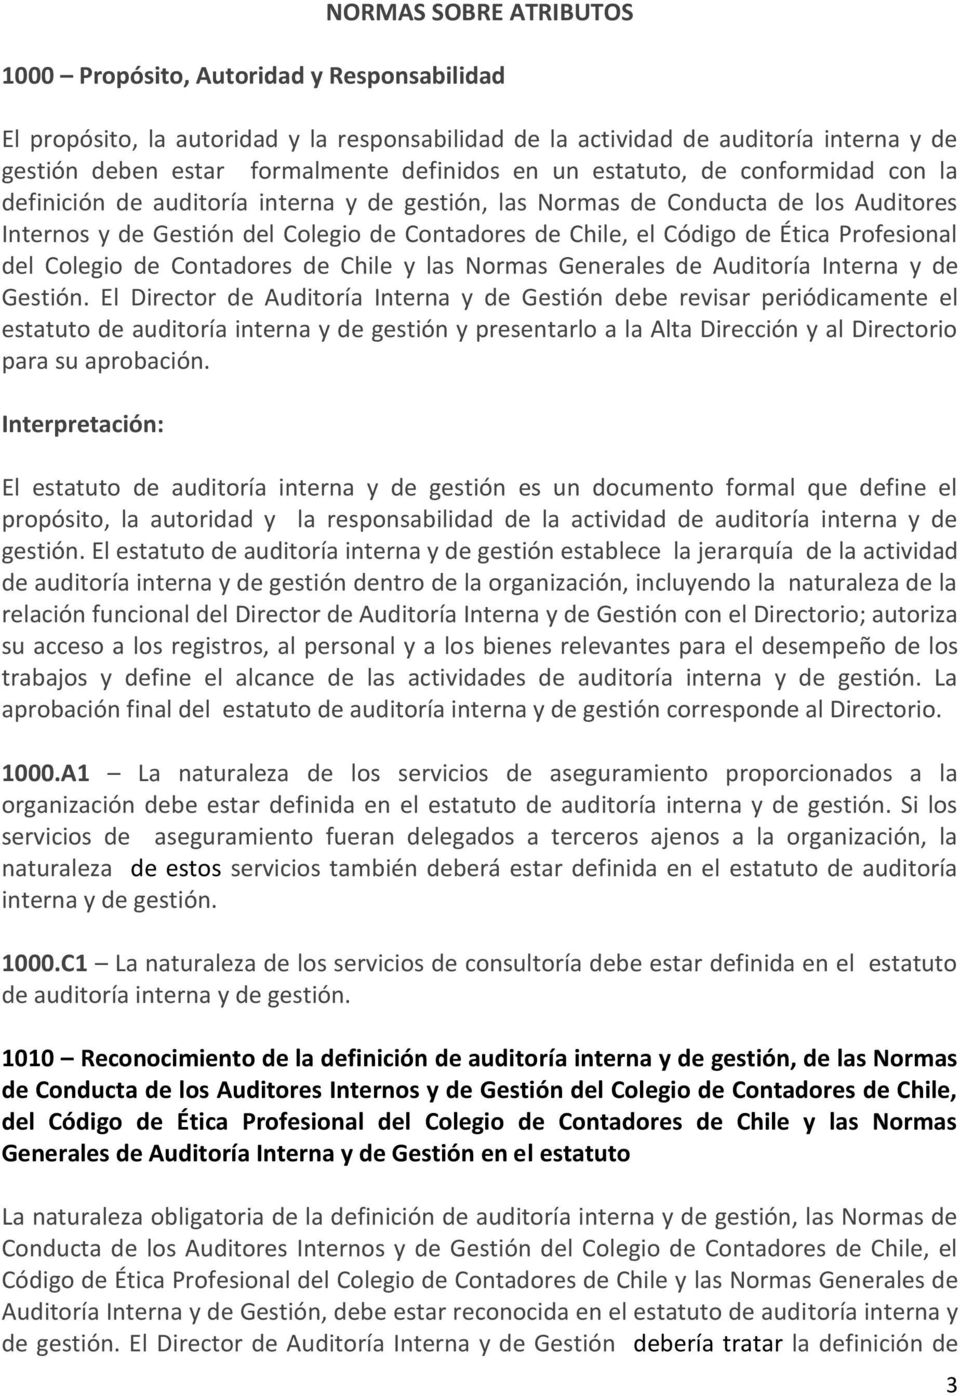 Ética Profesional del Colegio de Contadores de Chile y las Normas Generales de Auditoría Interna y de Gestión.